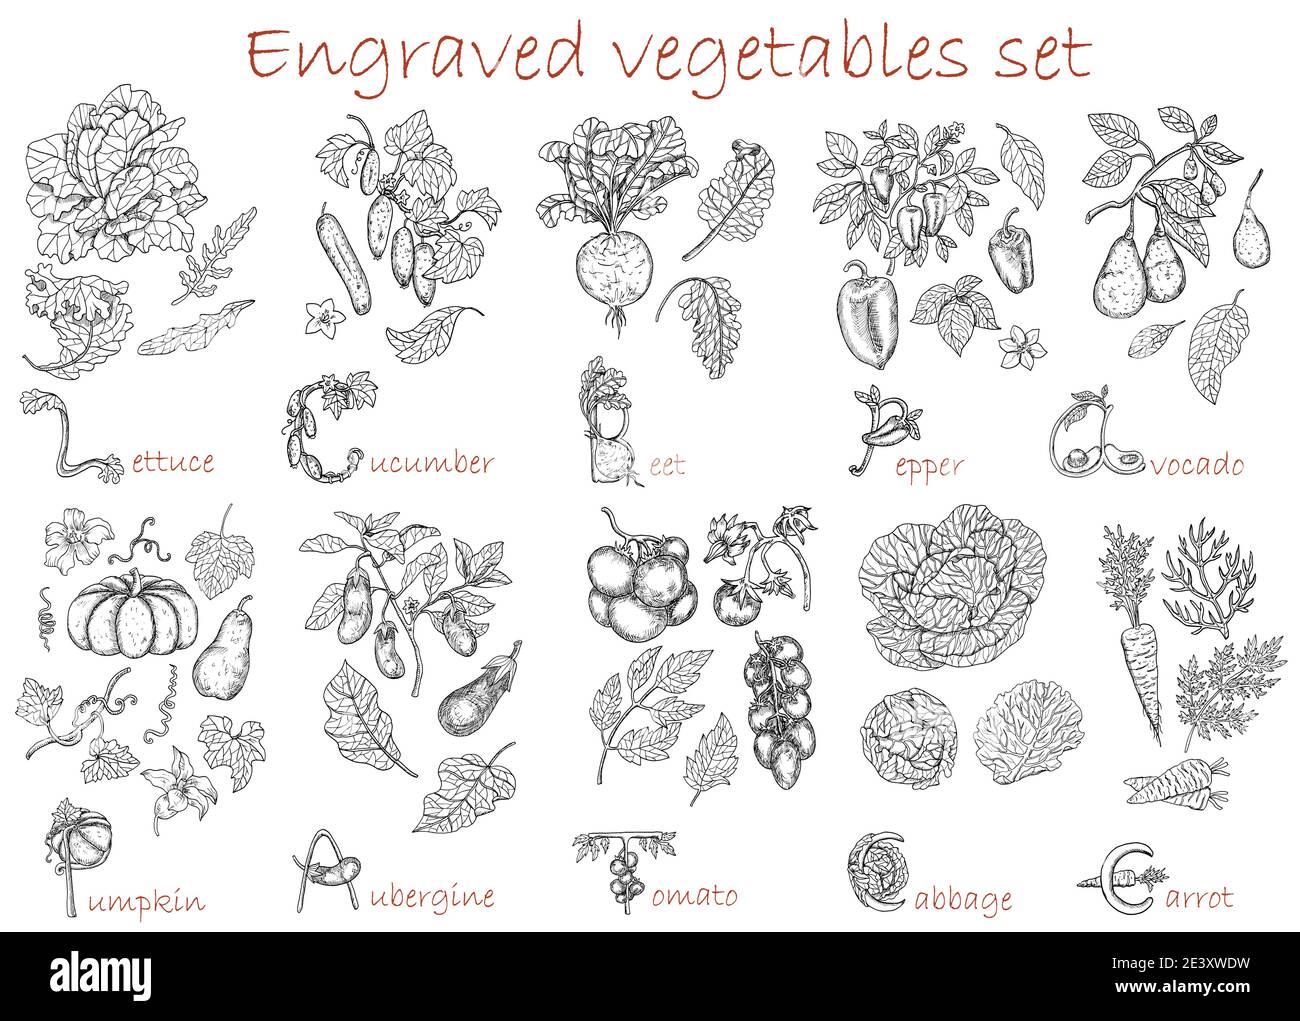 Design-Set mit Gemüse botanische Sammlung isoliert auf weiß. Handgezeichnet gravierte Vektorgrafik, schwarz-weiße Linienkunst, gesunde Ernährung, Stock Vektor